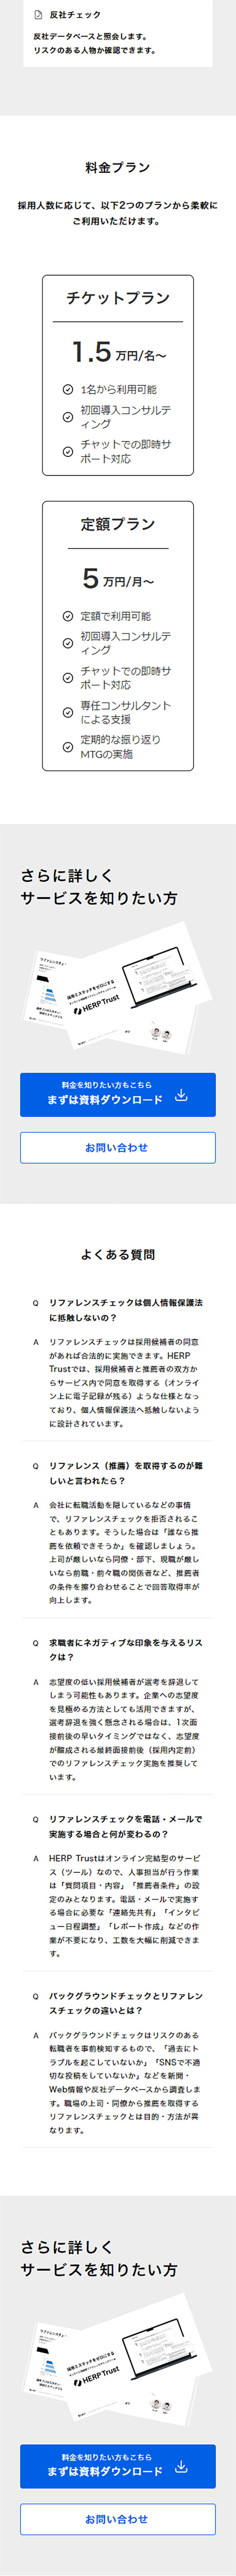 HERP Trust_sp_2